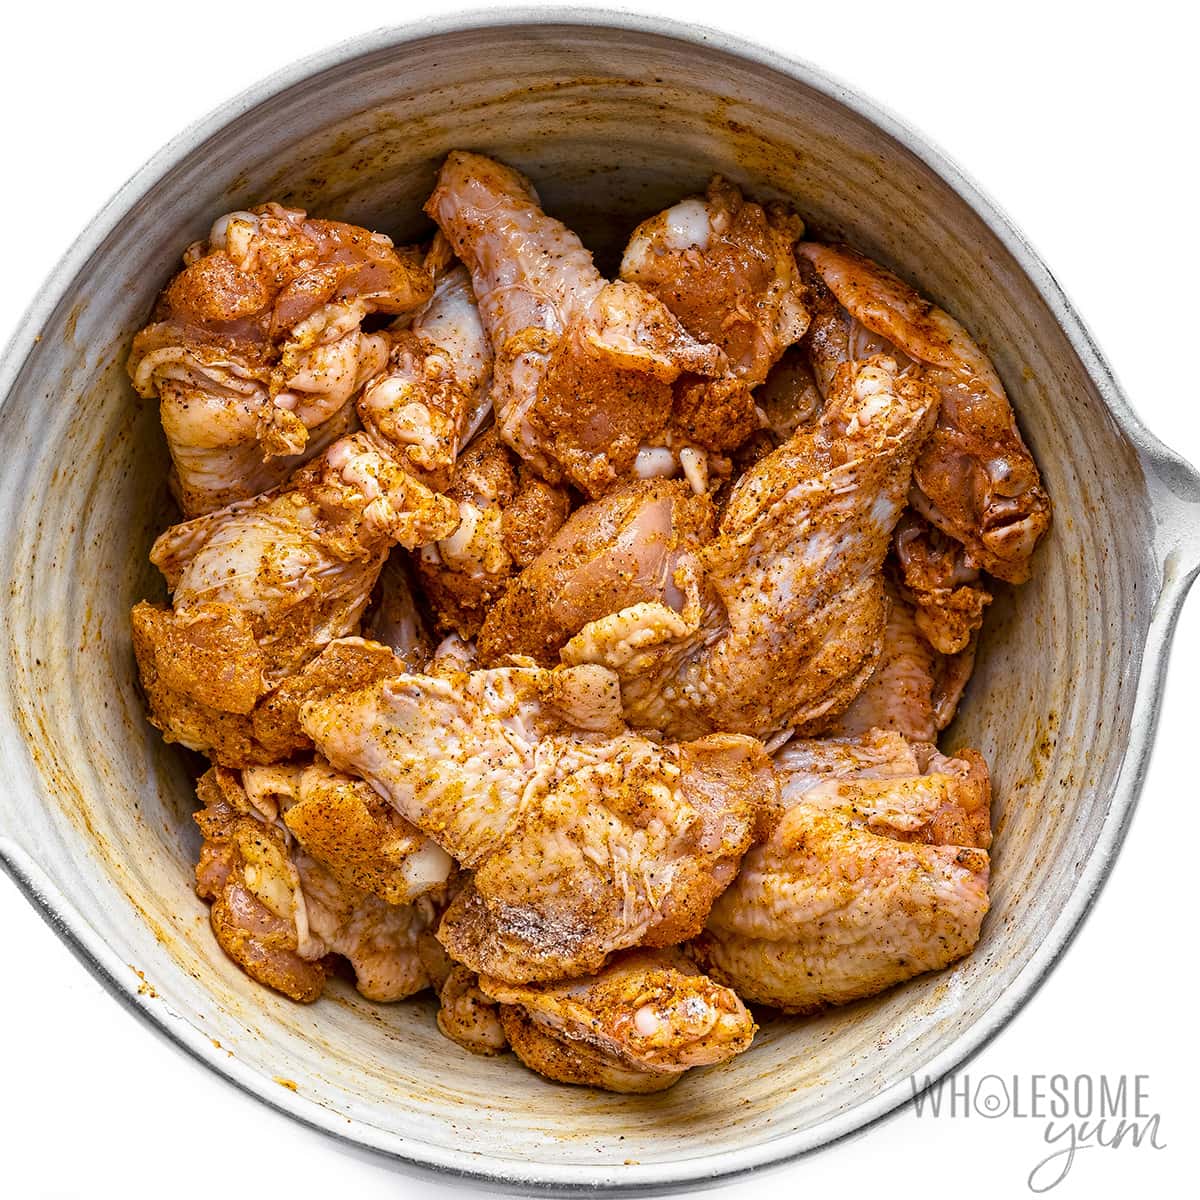 Raw chicken wings seasoned in a bowl.